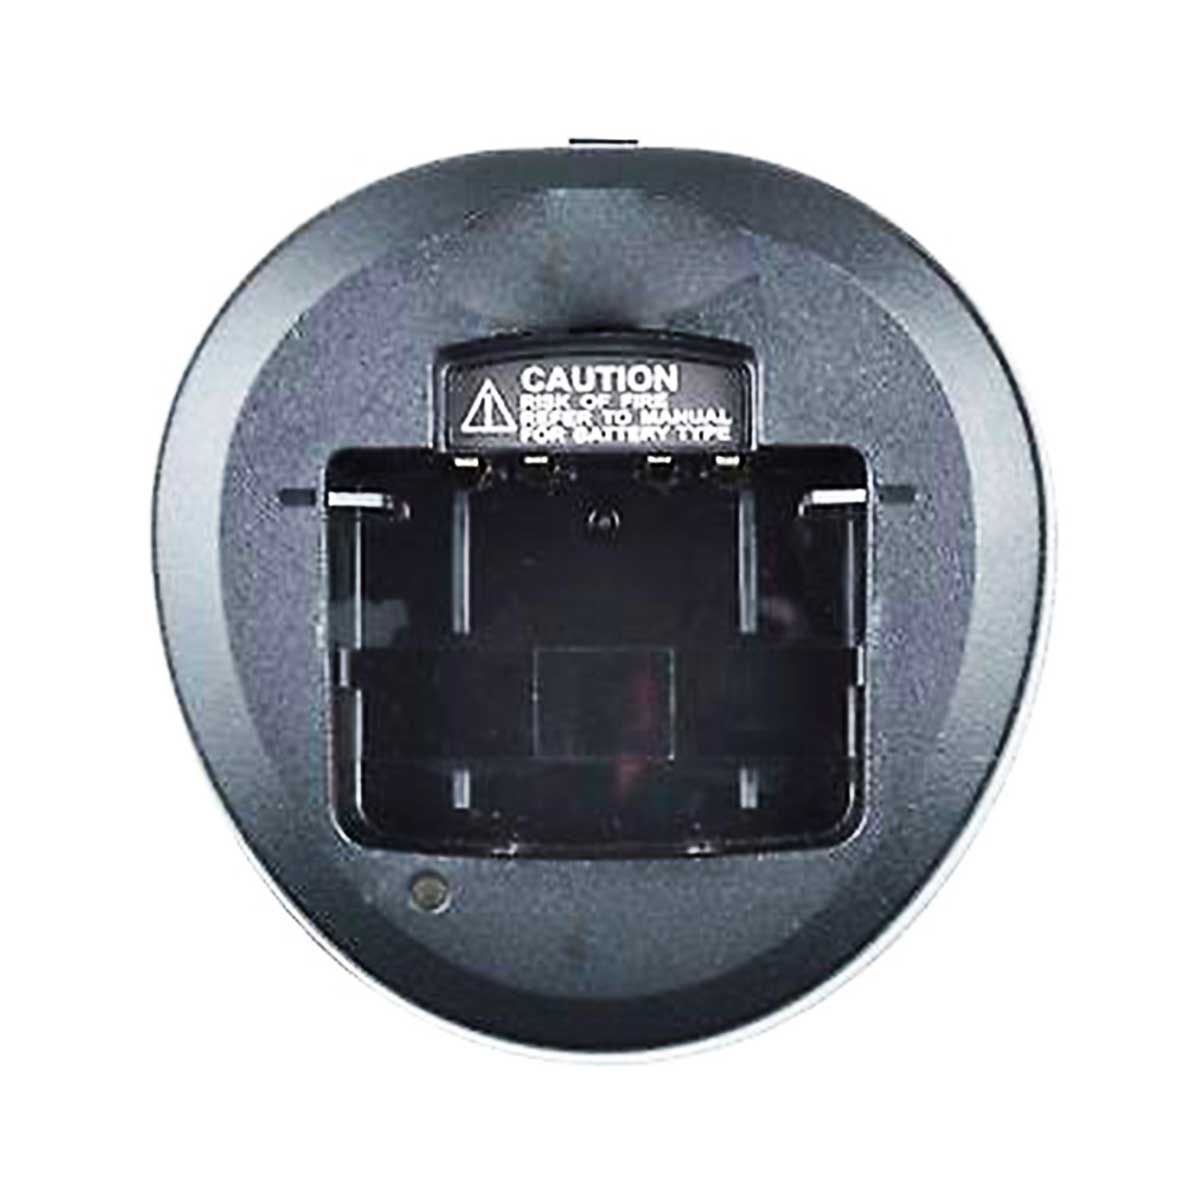 Cargador individual Motorola CD-58 para radio EVX-261